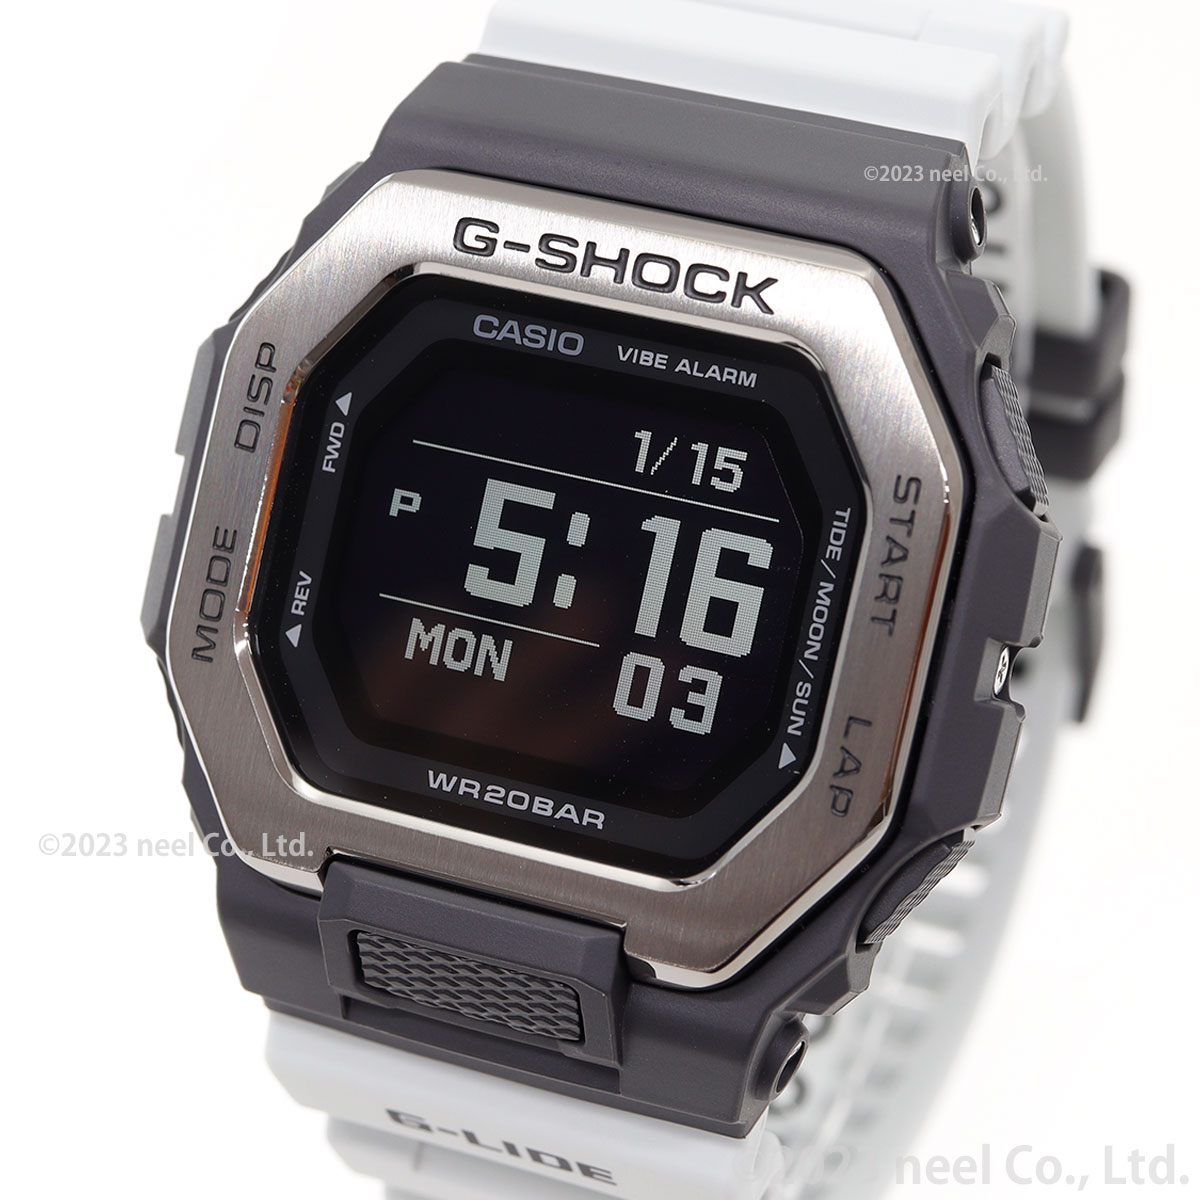 Gショック Gライド G-SHOCK G-LIDE デジタル 腕時計 メンズ CASIO GBX 